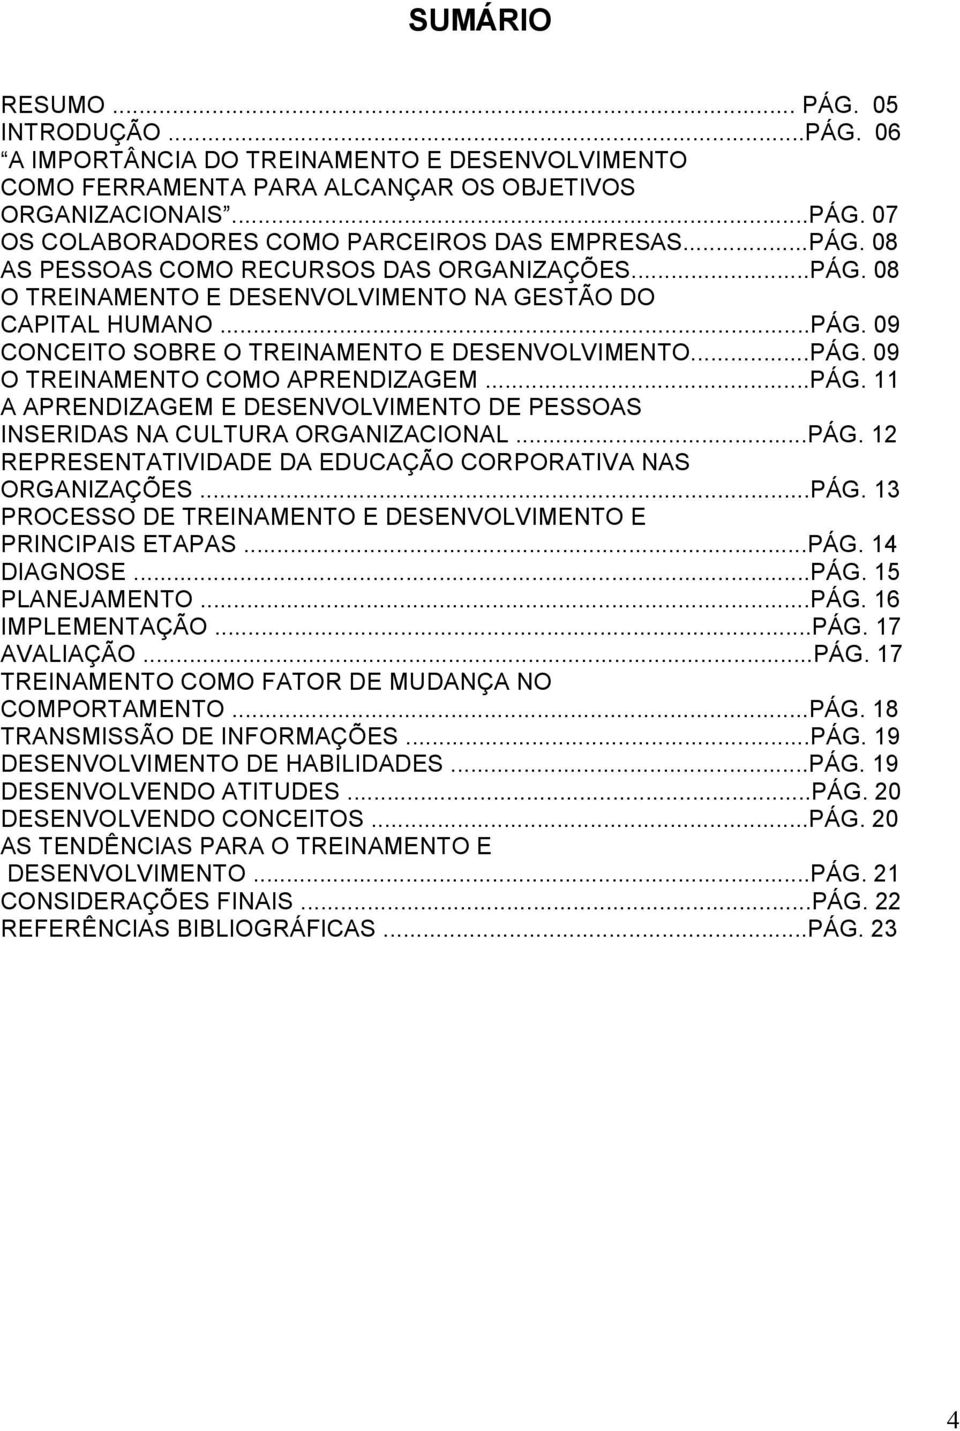 ..PÁG. 11 A APRENDIZAGEM E DESENVOLVIMENTO DE PESSOAS INSERIDAS NA CULTURA ORGANIZACIONAL...PÁG. 12 REPRESENTATIVIDADE DA EDUCAÇÃO CORPORATIVA NAS ORGANIZAÇÕES...PÁG. 13 PROCESSO DE TREINAMENTO E DESENVOLVIMENTO E PRINCIPAIS ETAPAS.